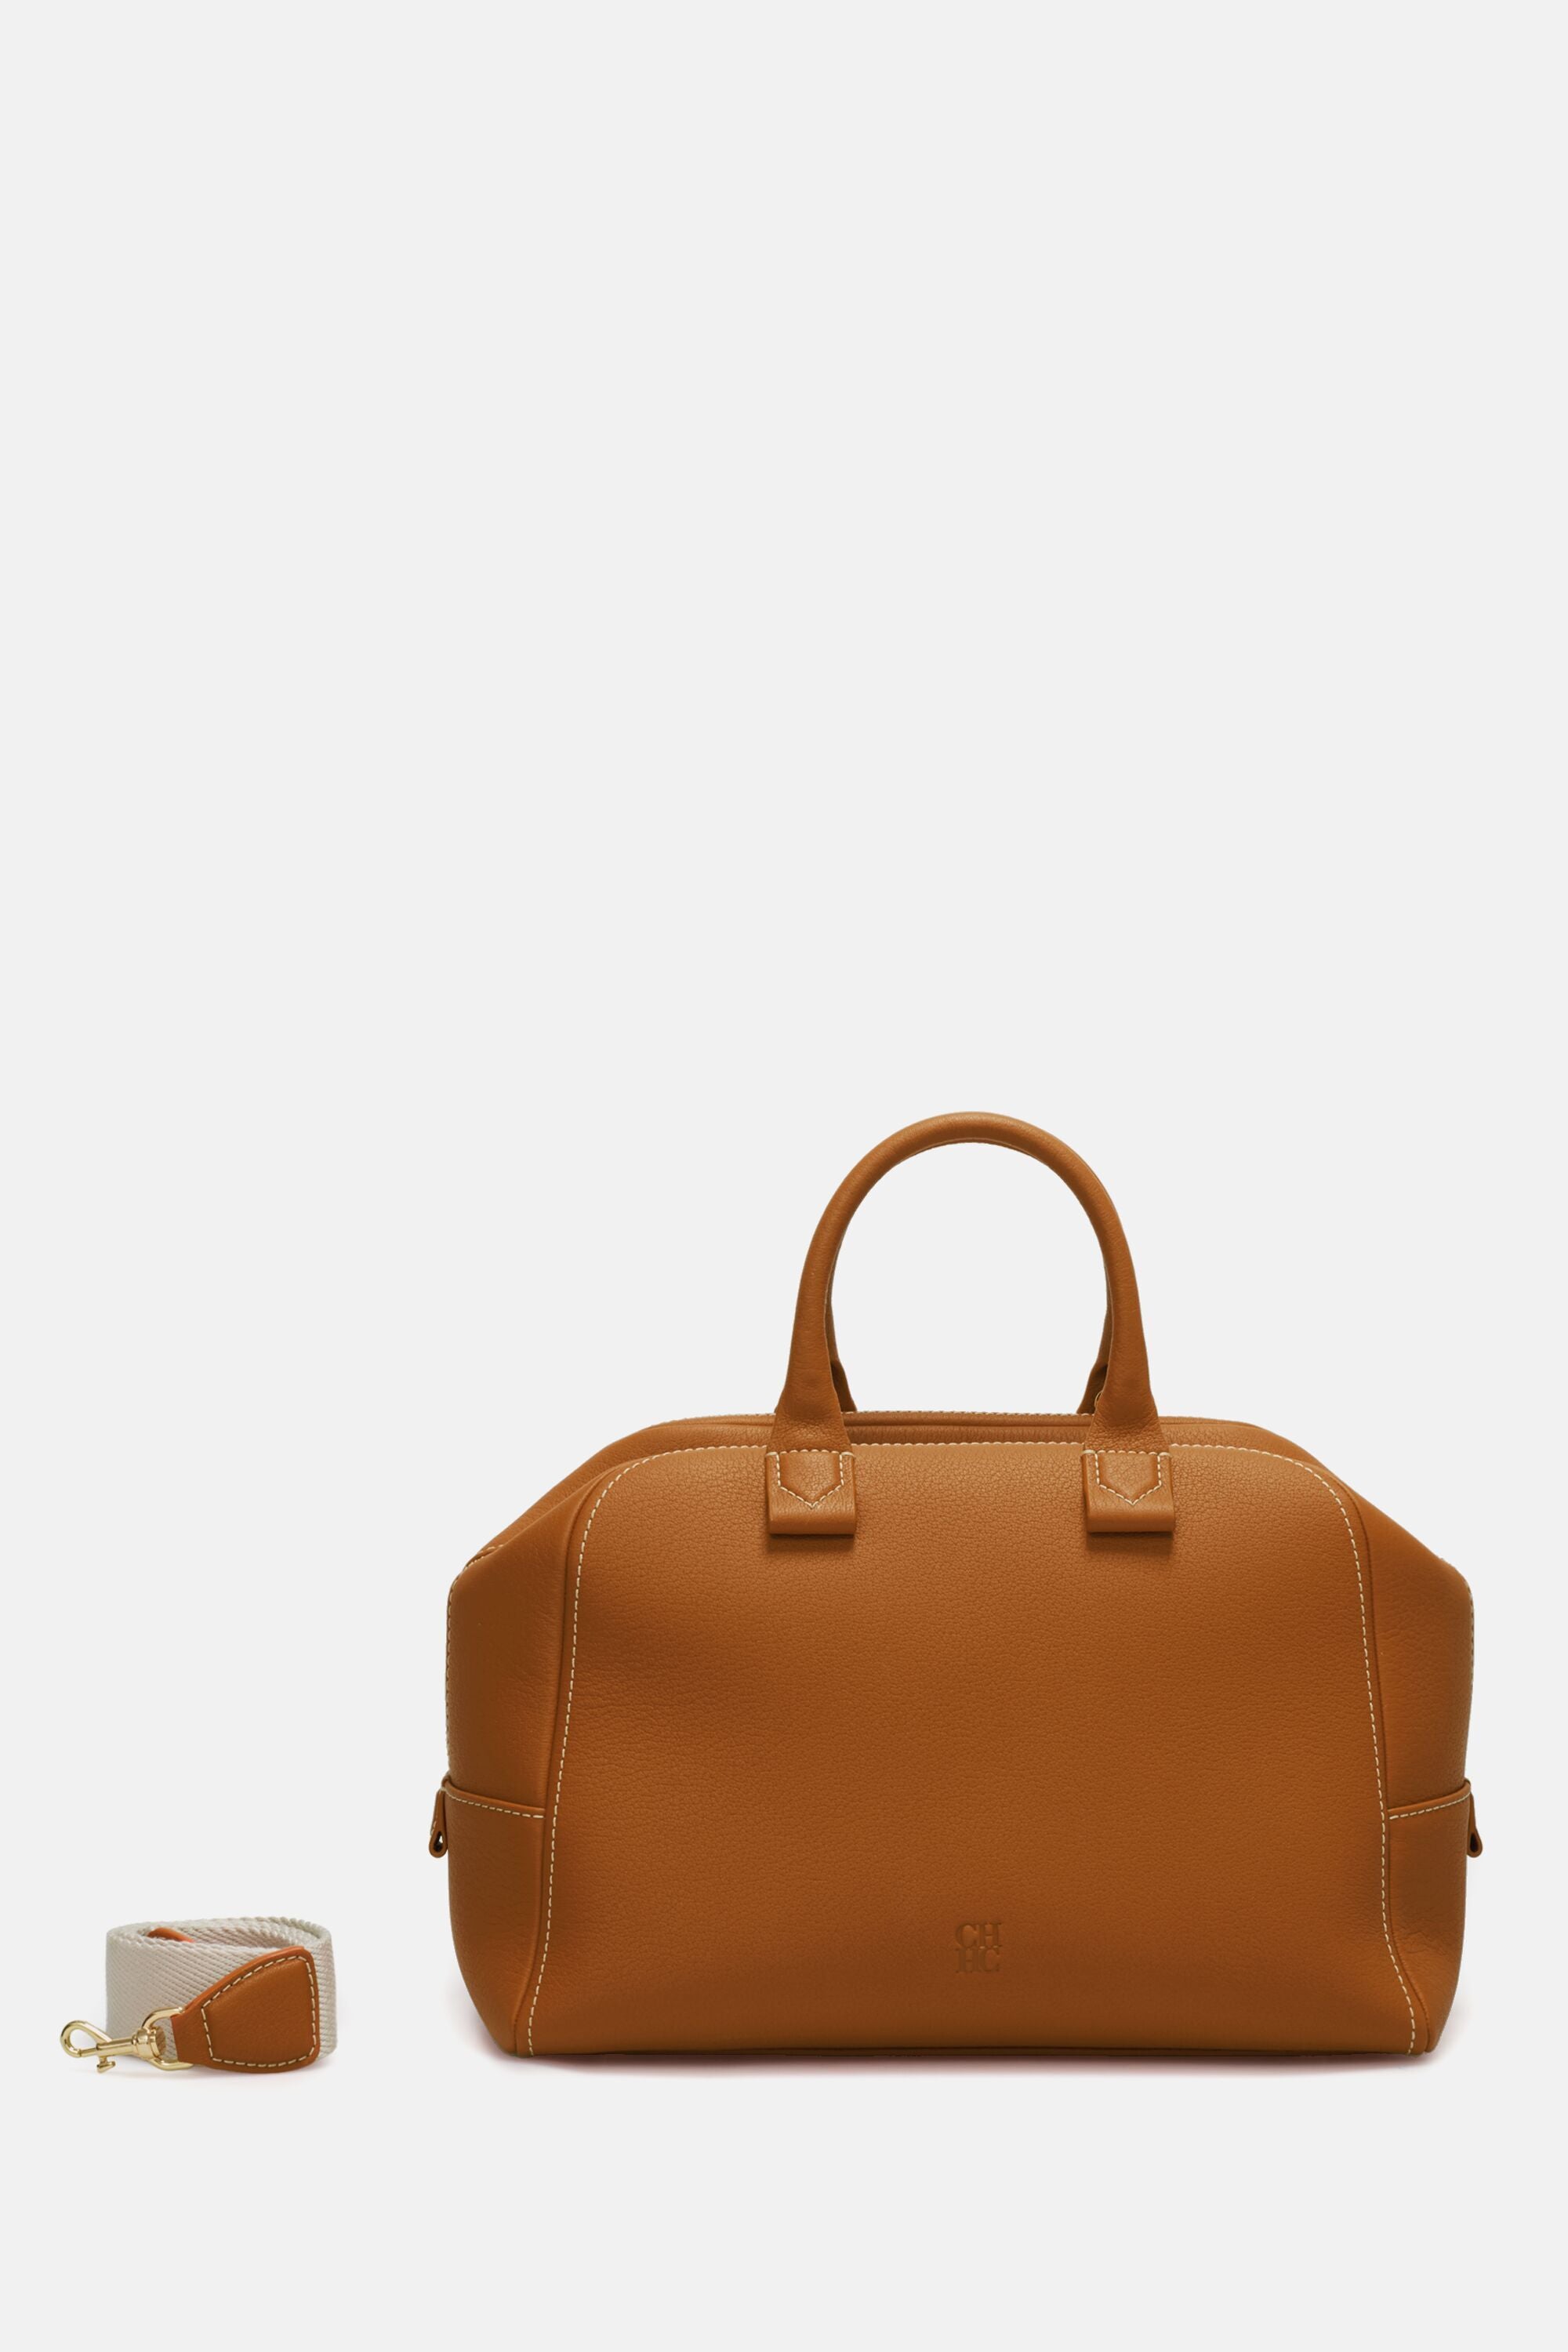 Blasón S | Medium handbag cognac - CH Carolina Herrera United States